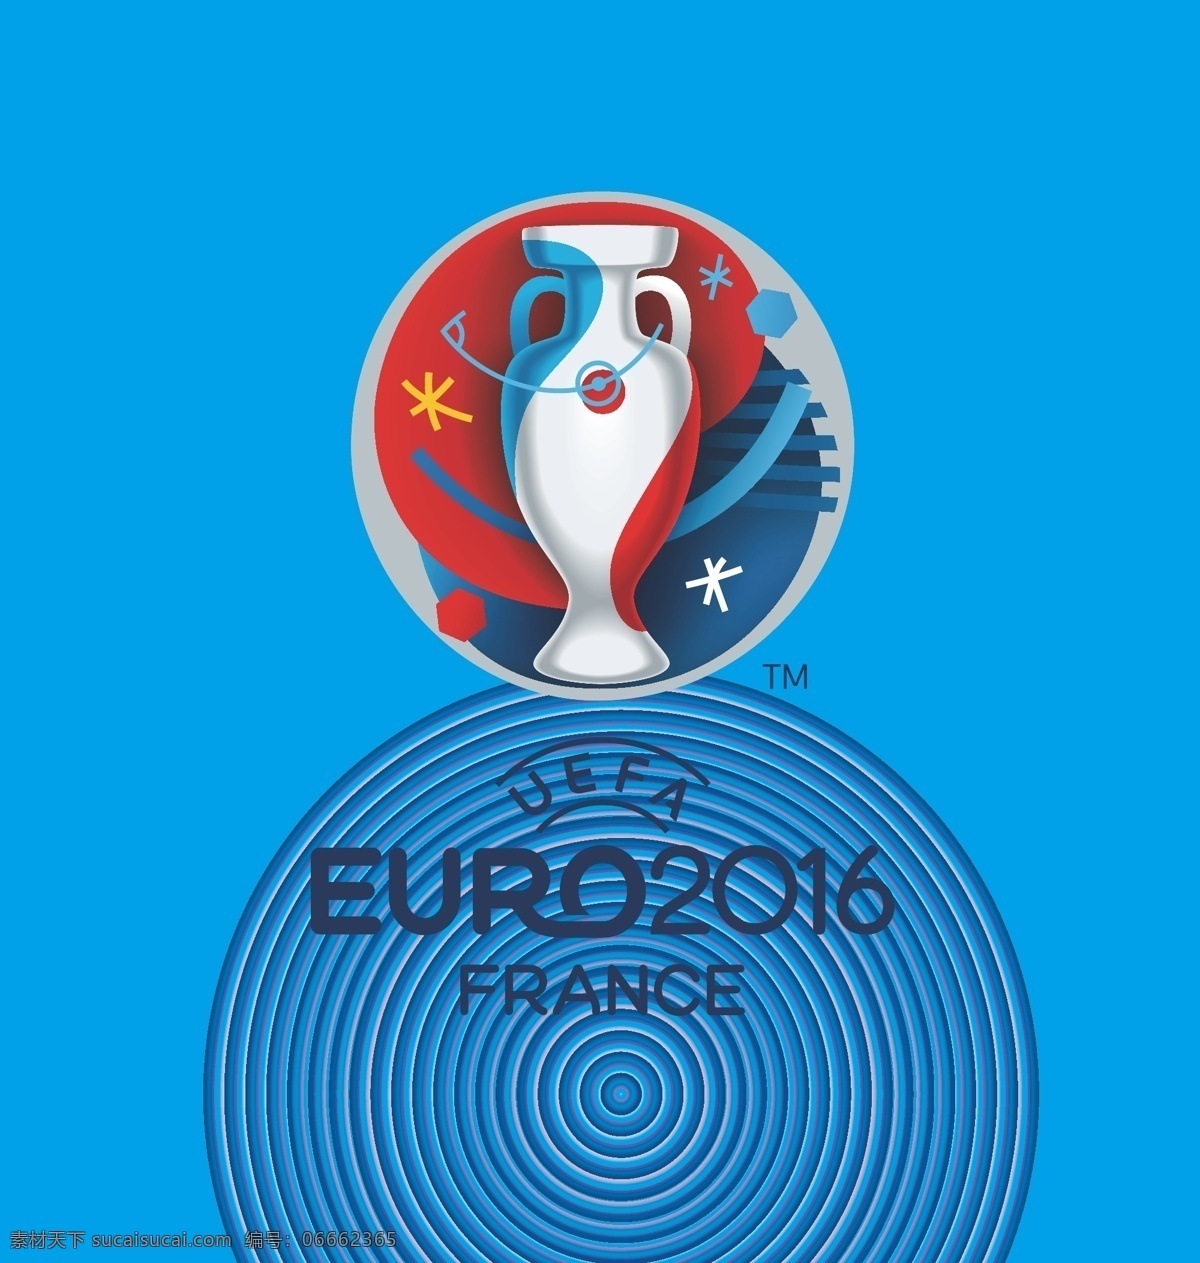 2016 年 欧洲杯 足球赛 会徽 法国 logo 标志 标志图标 公共标识标志